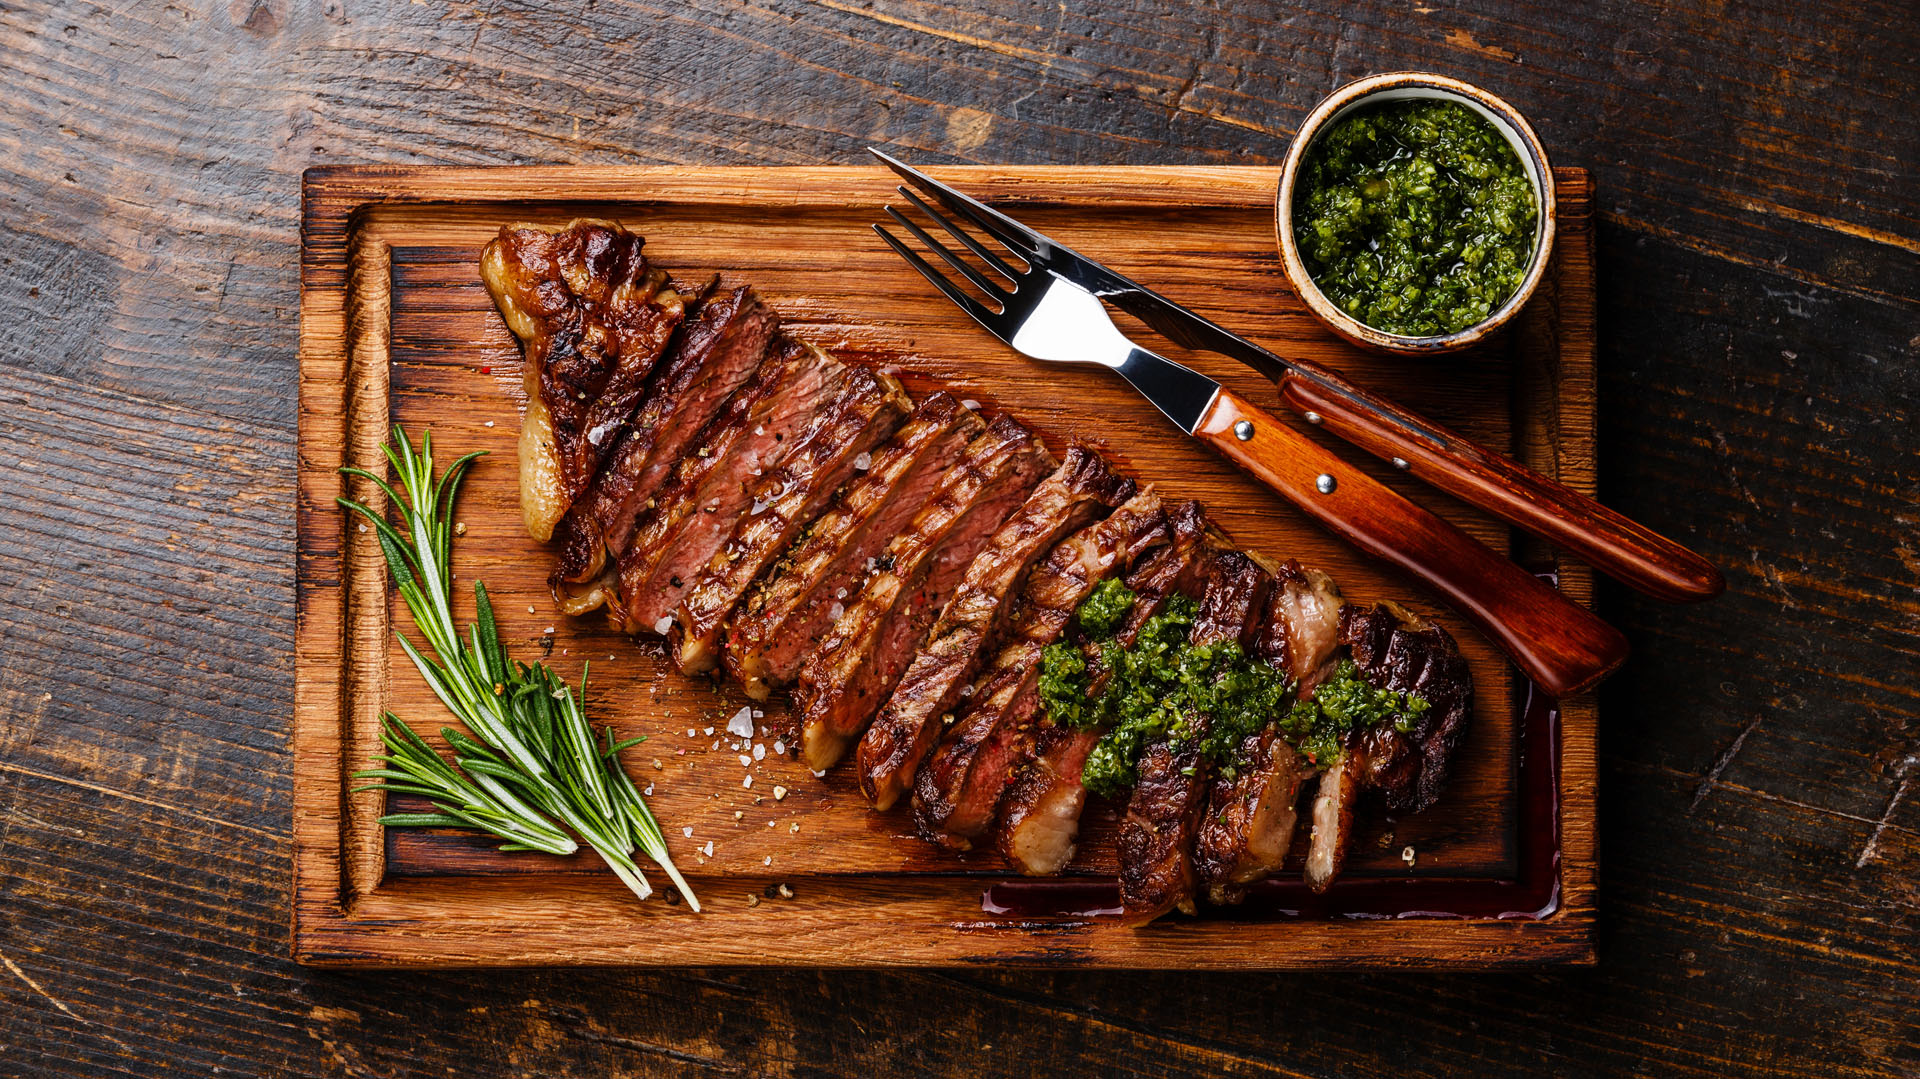 La carne es uno de los alimentos más ricos en hierro (Shutterstock)